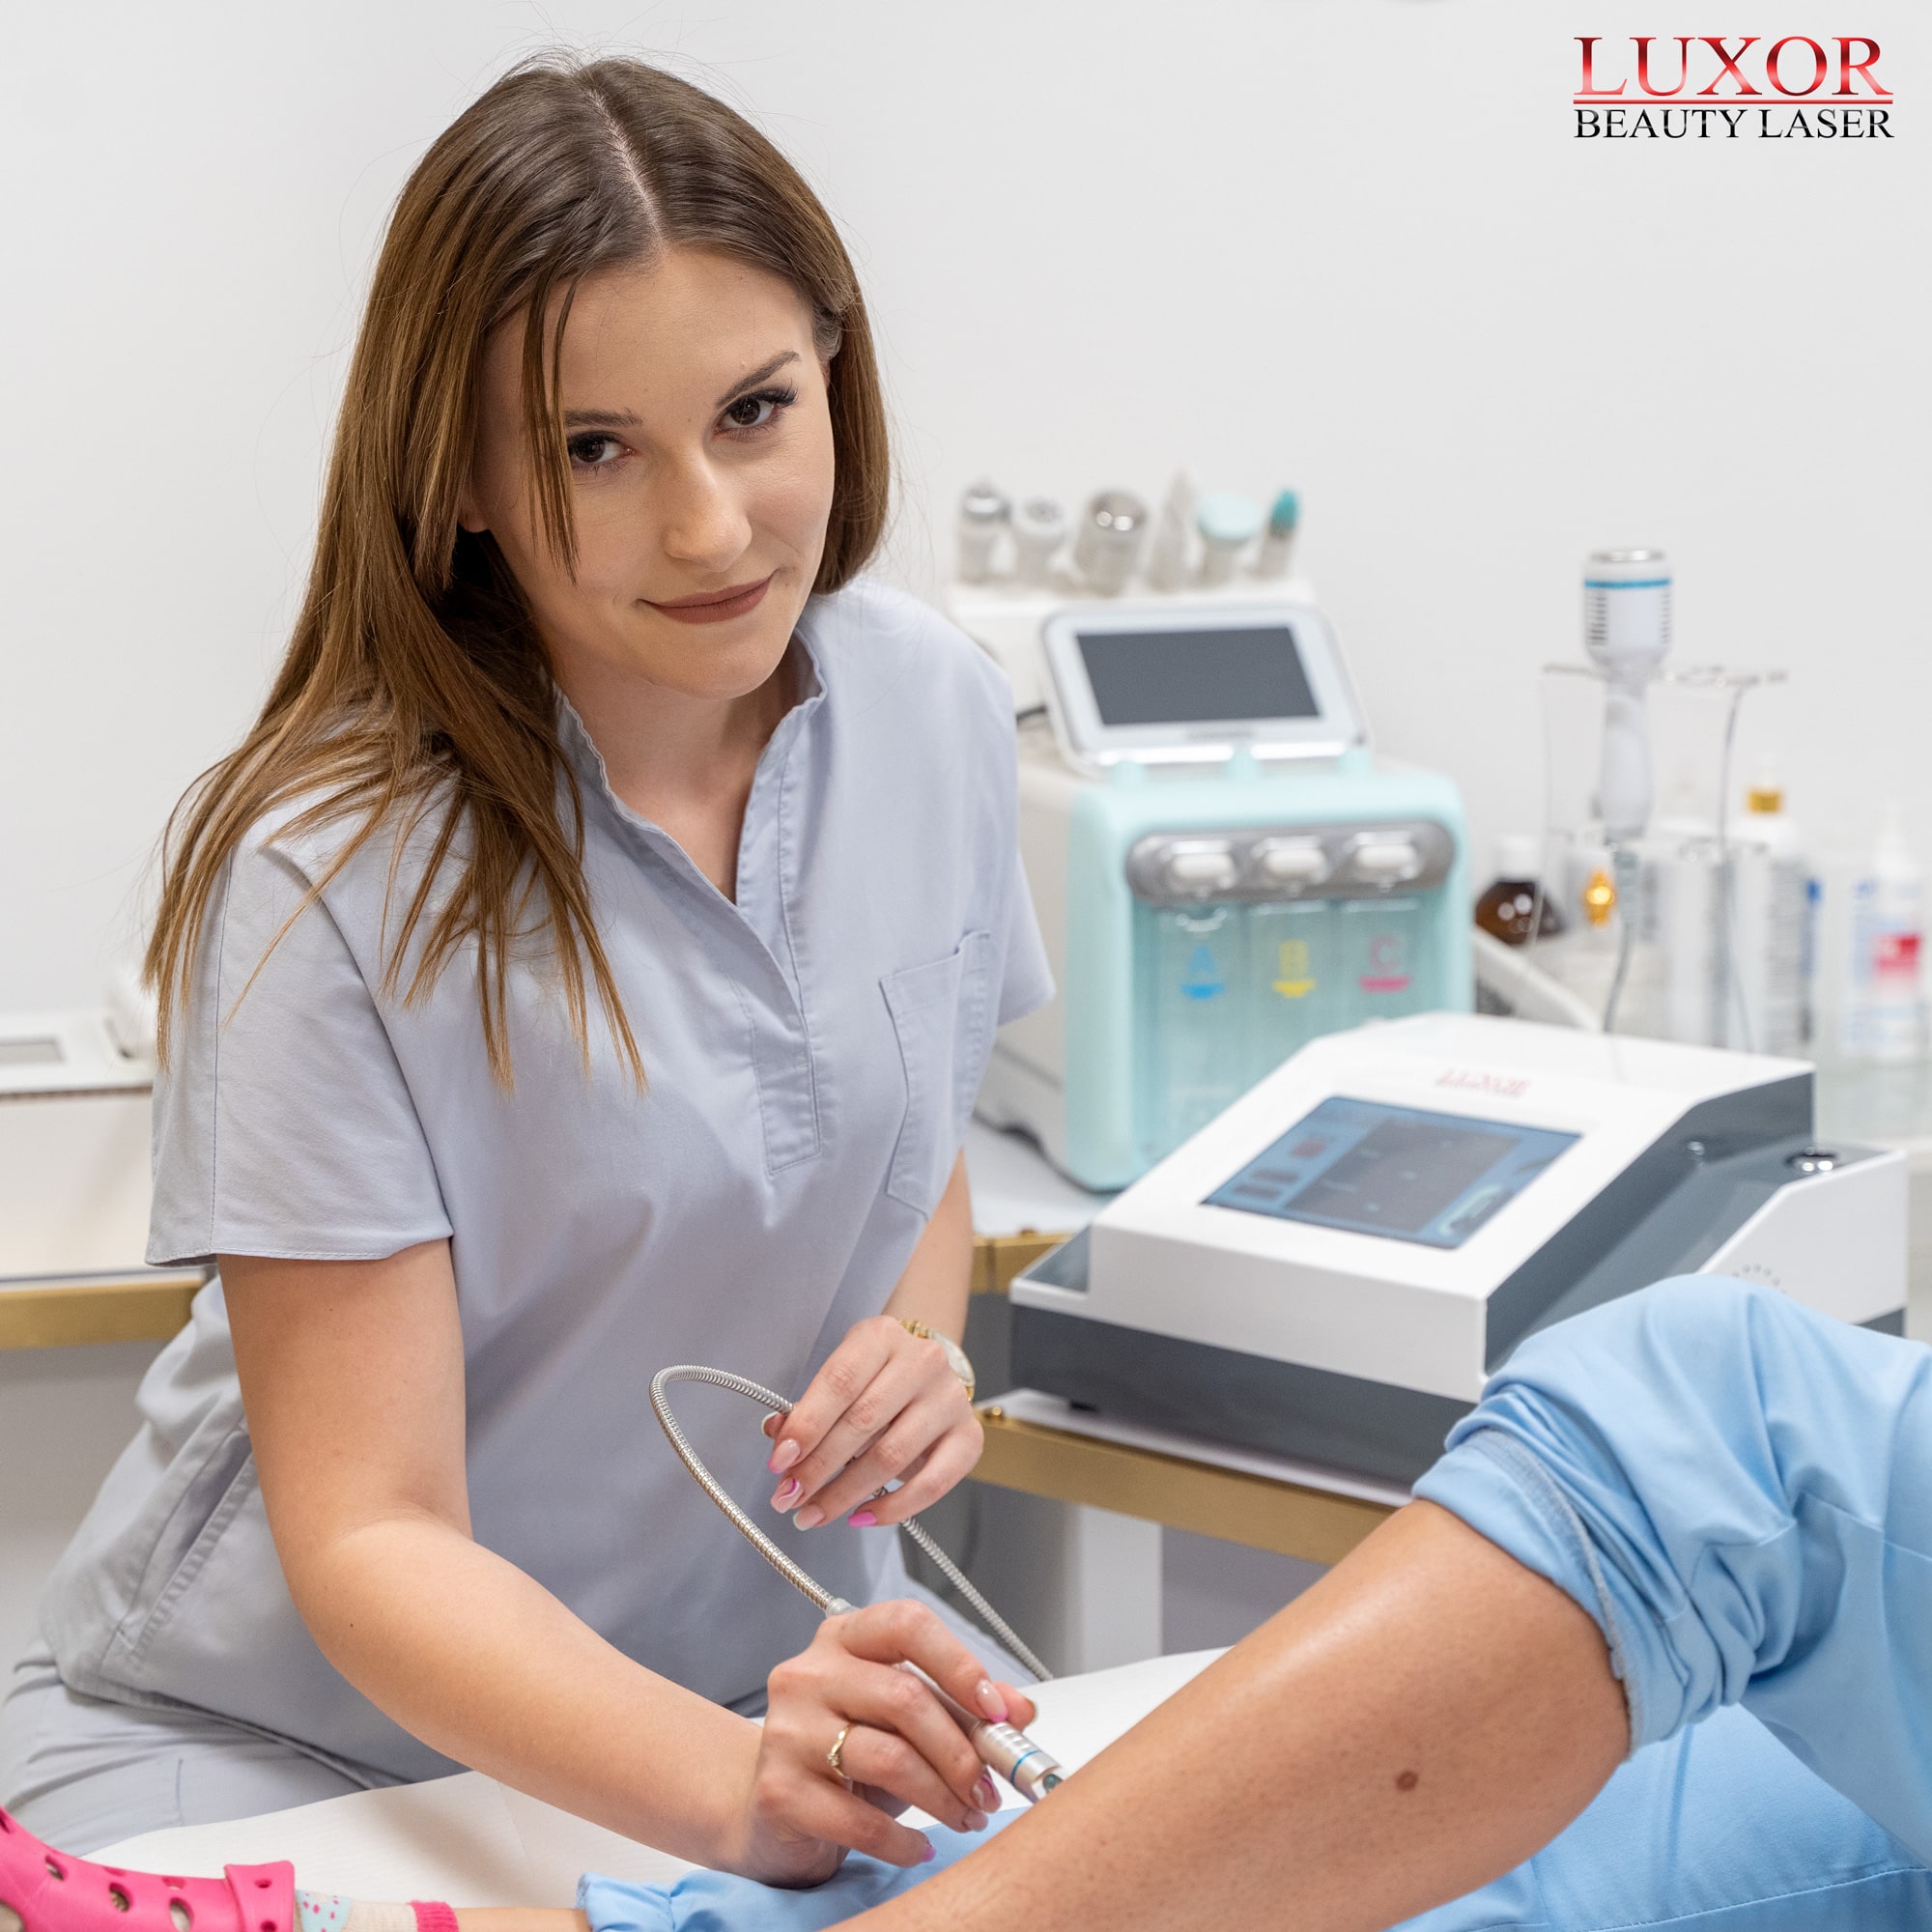 Podczas wykonywania terapii laserowej uczestniczka jest pilnowana przez mgr kosmetologii